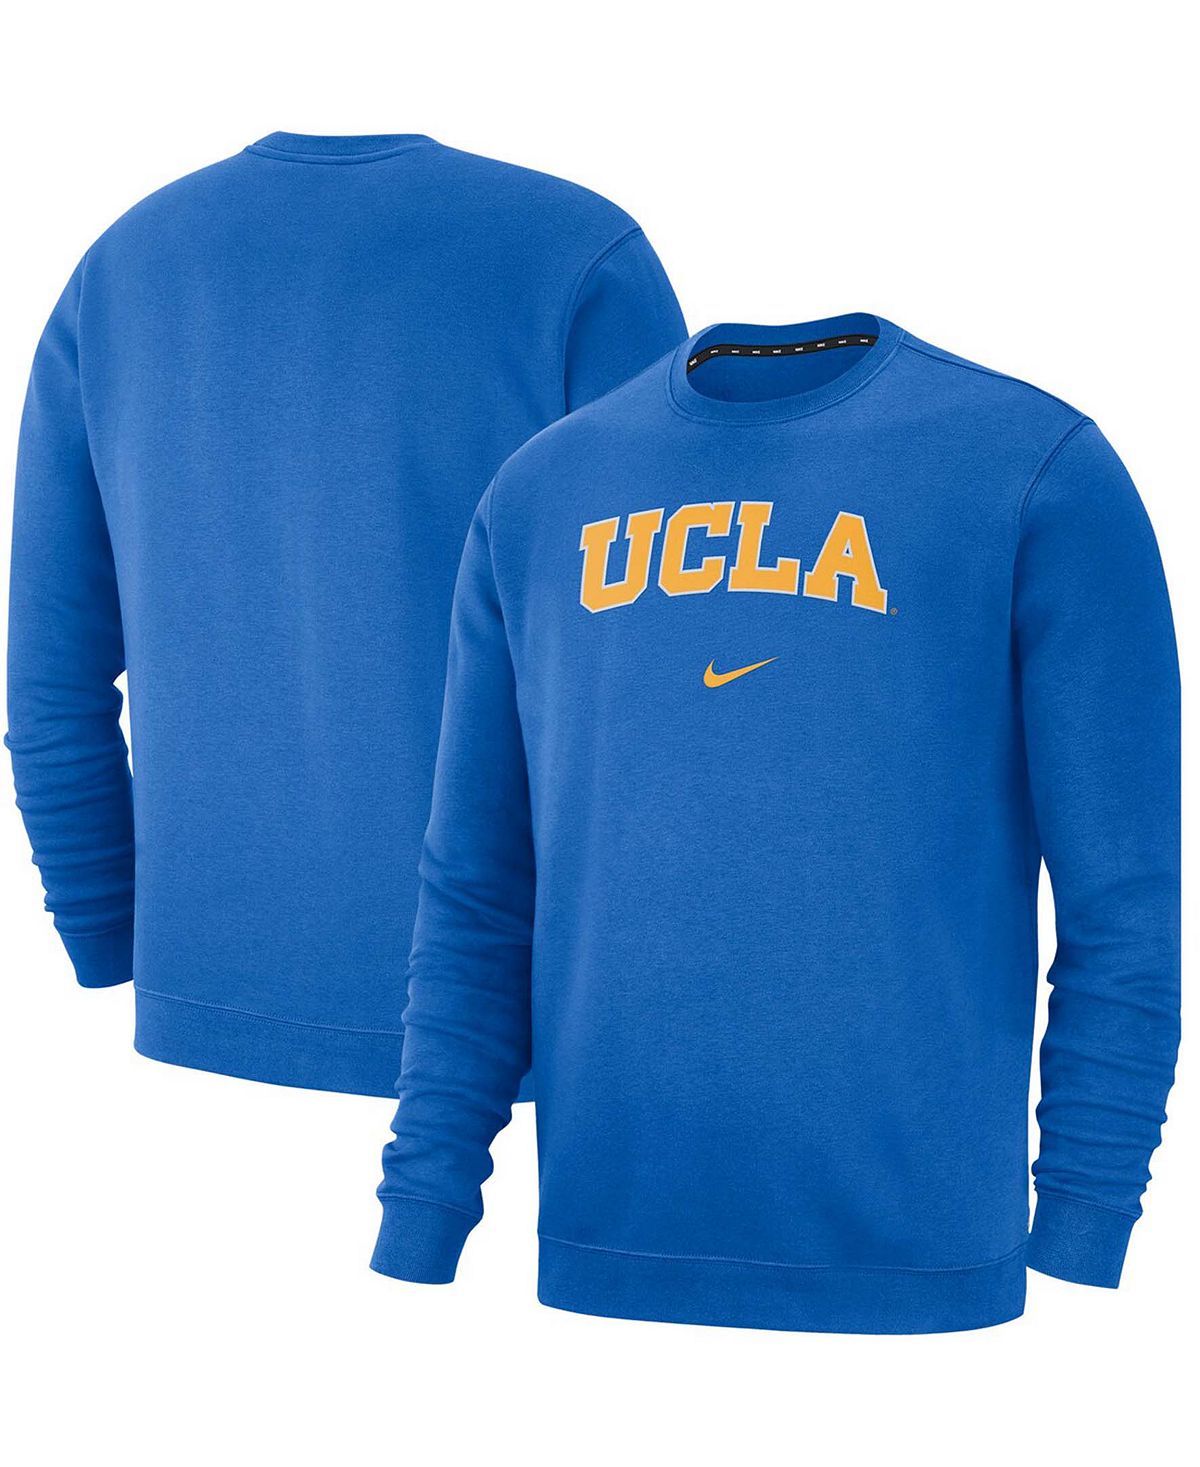 Мужской синий флисовый пуловер UCLA Bruins Club свитшот Nike роум маргарет холодная страсть